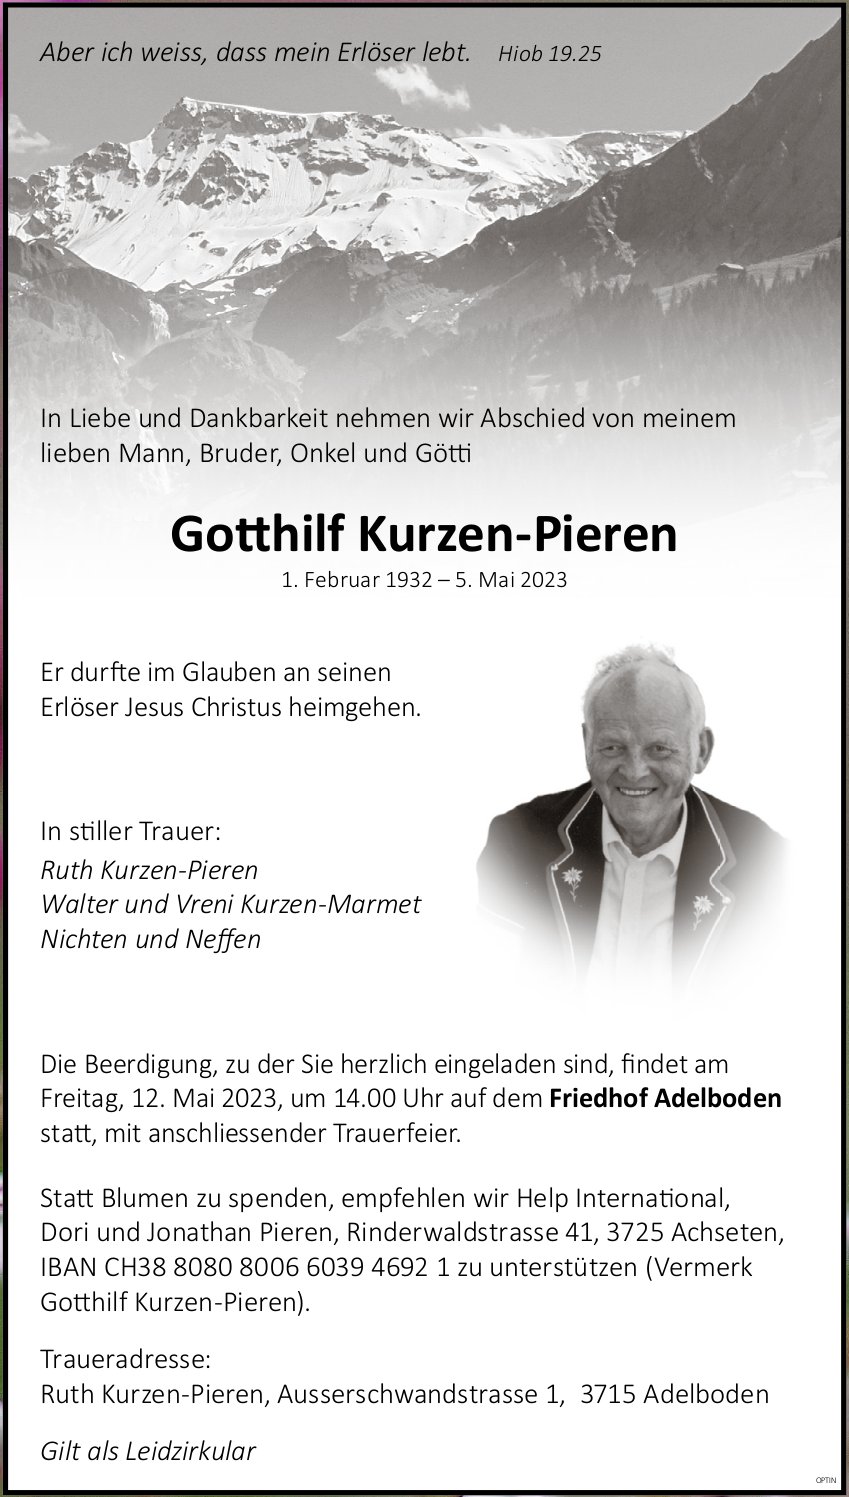 Go hilf Kurzen-Pieren, Mai 2023 / TA